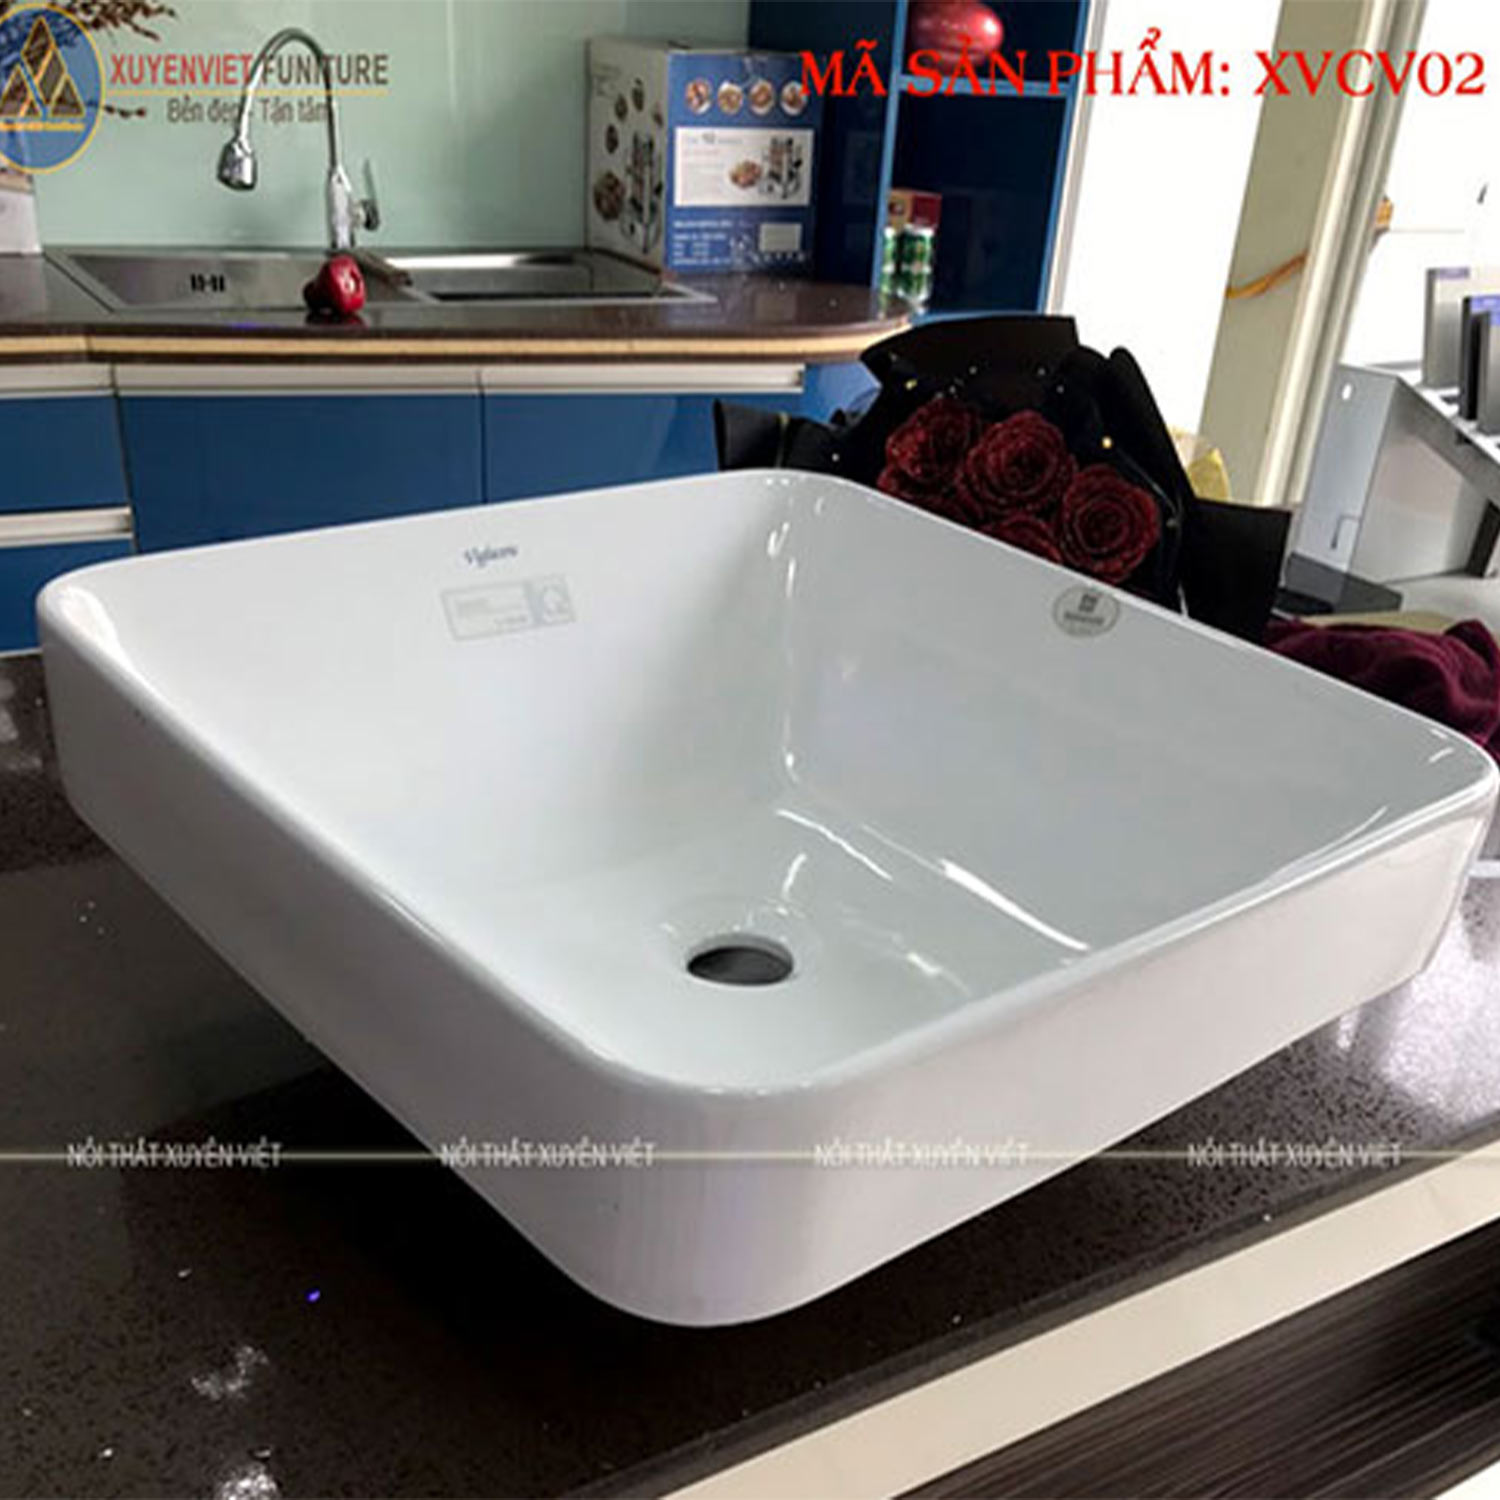 Tính năng của chậu rửa lavabo bán âm bán dương XVCV02 tại Xuyên Việt